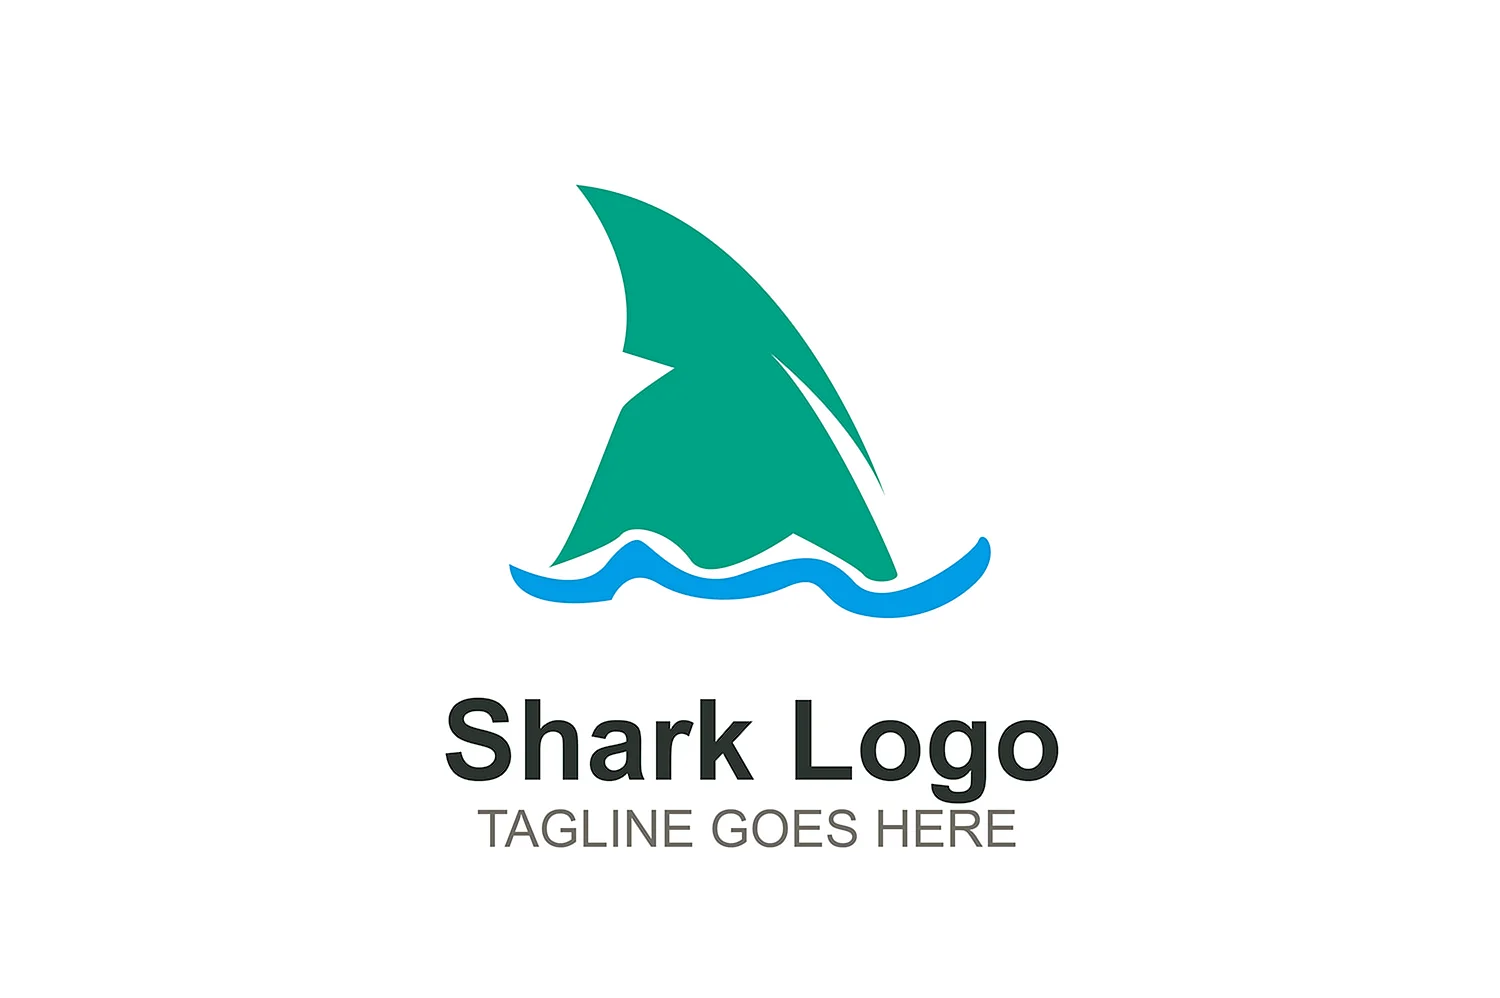 Логотипы акула 2020